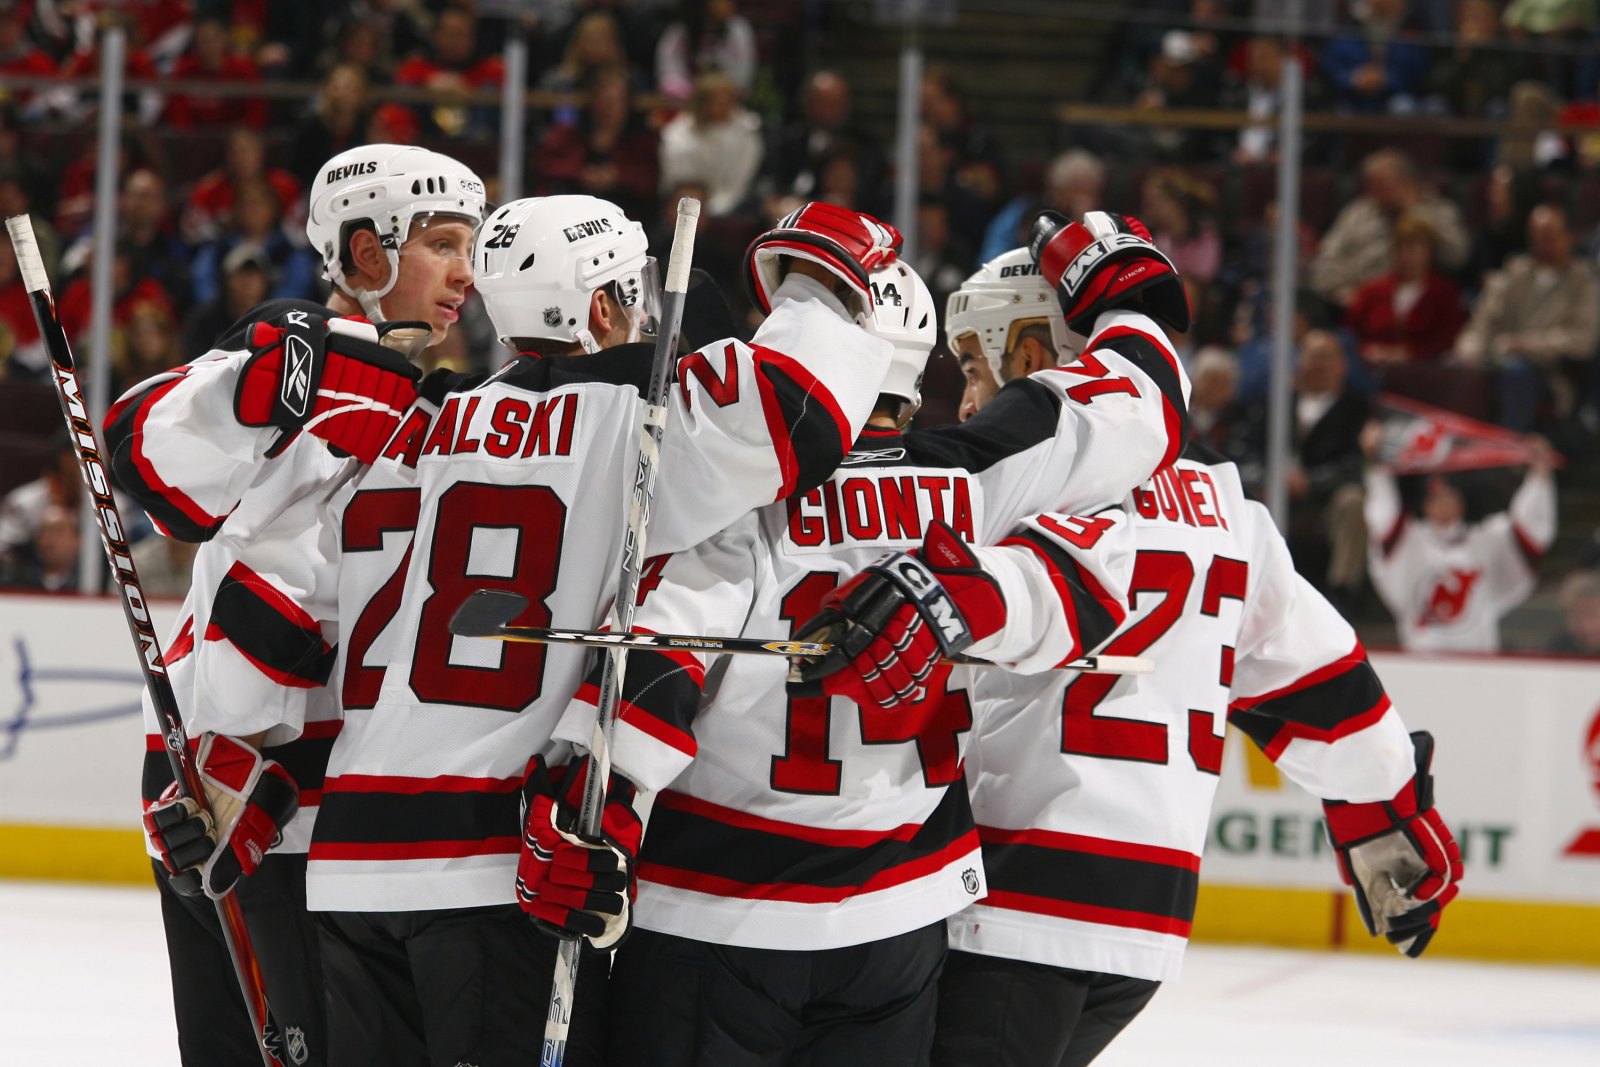 Game Preview #23: New Jersey Devils vs. Ottawa Senators - All